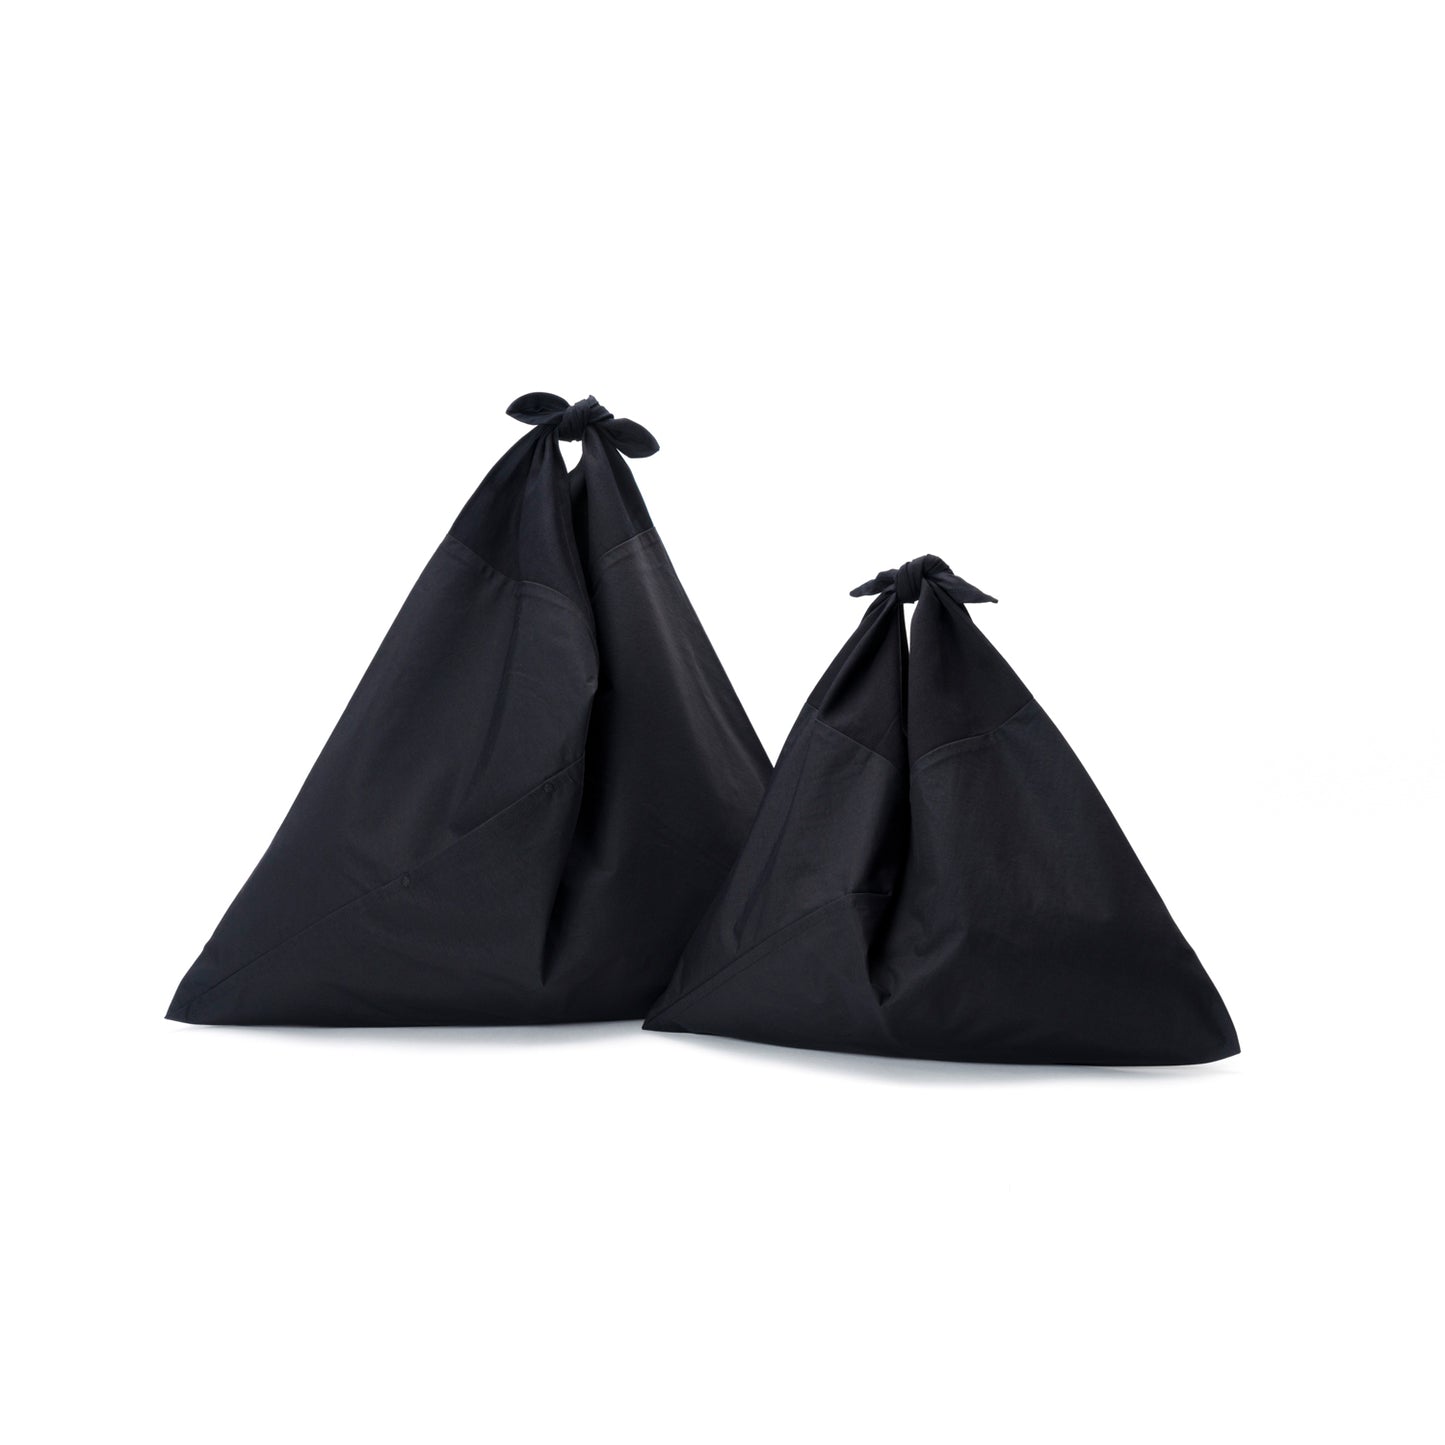 AZUMA BAG + TASUKI BAG series -PLAIN-